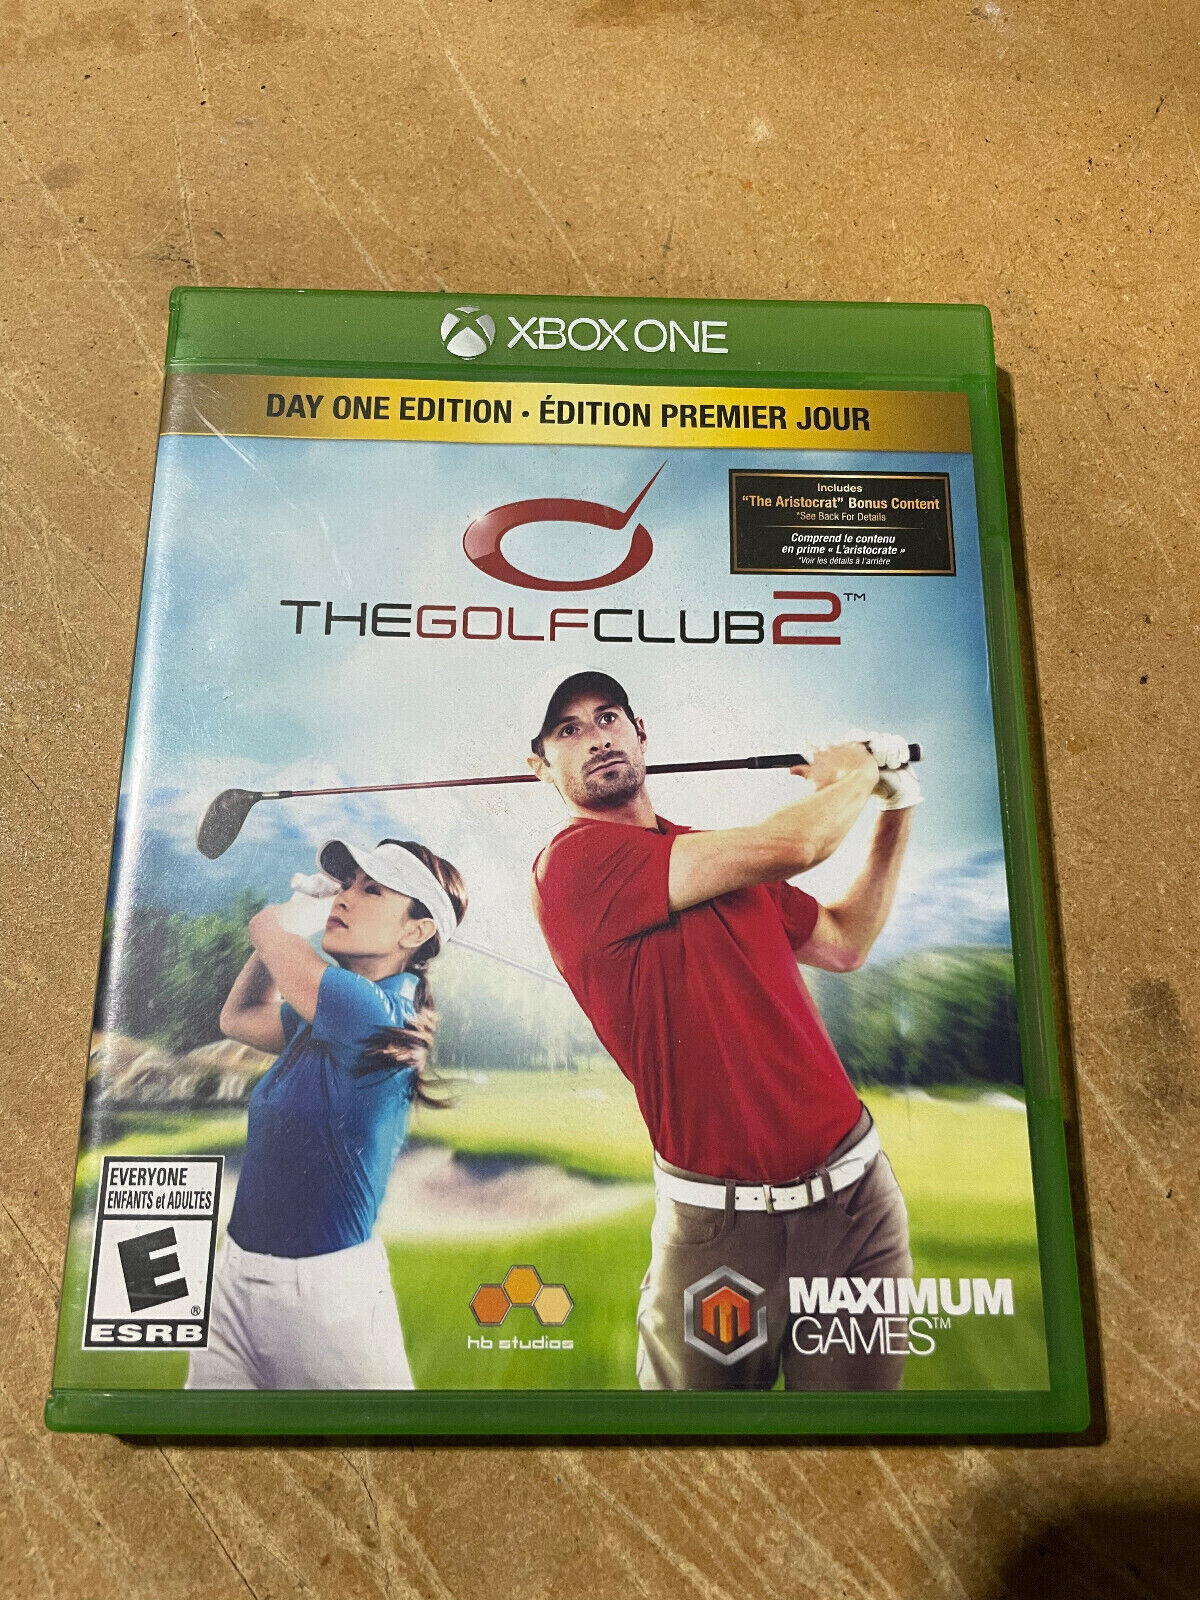 Katholiek Luidspreker pasta The Golf Club 2: Day One Edition (Xbox One) 814290013776 | eBay